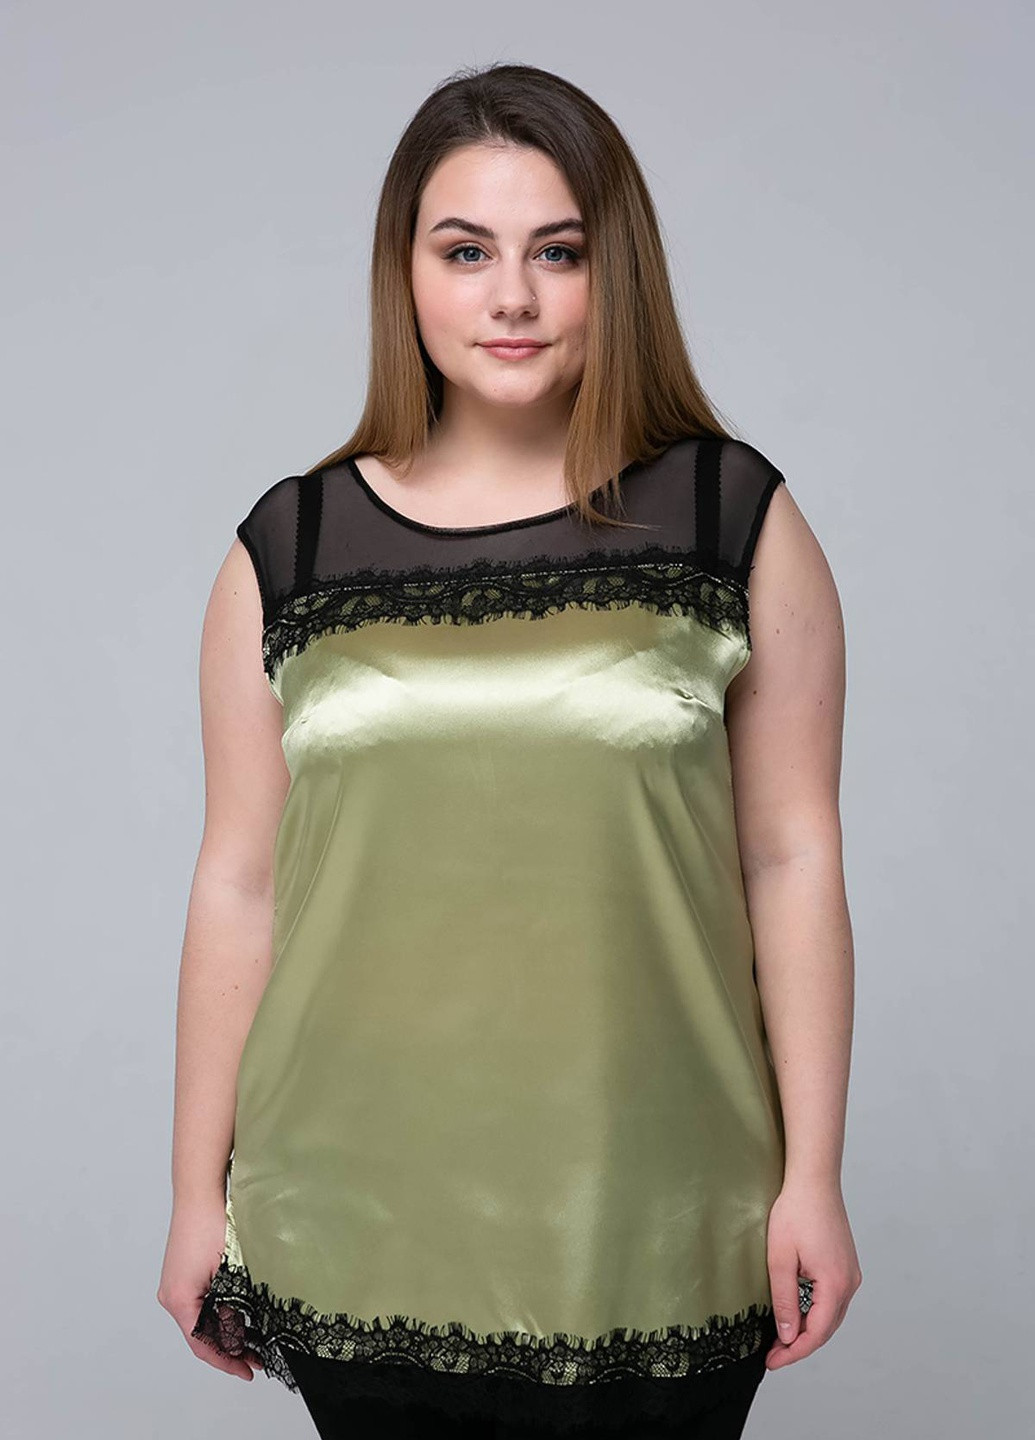 Оливковая атласная блуза с кружевом тони оливковая Tatiana